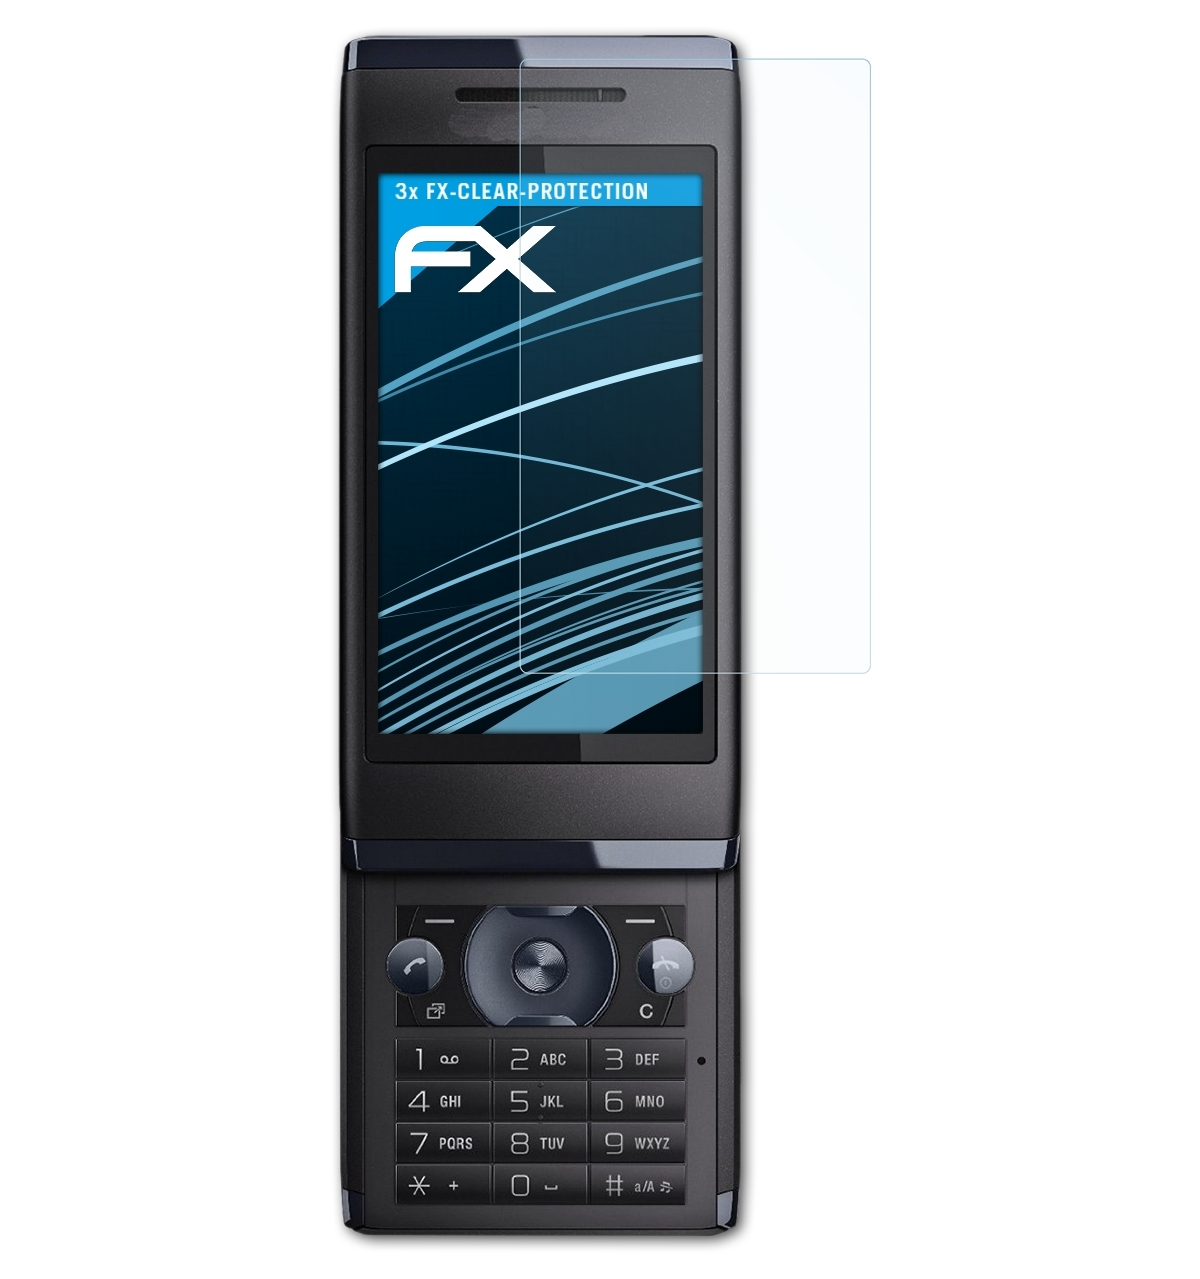 Displayschutz(für Sony-Ericsson Aino) FX-Clear 3x ATFOLIX